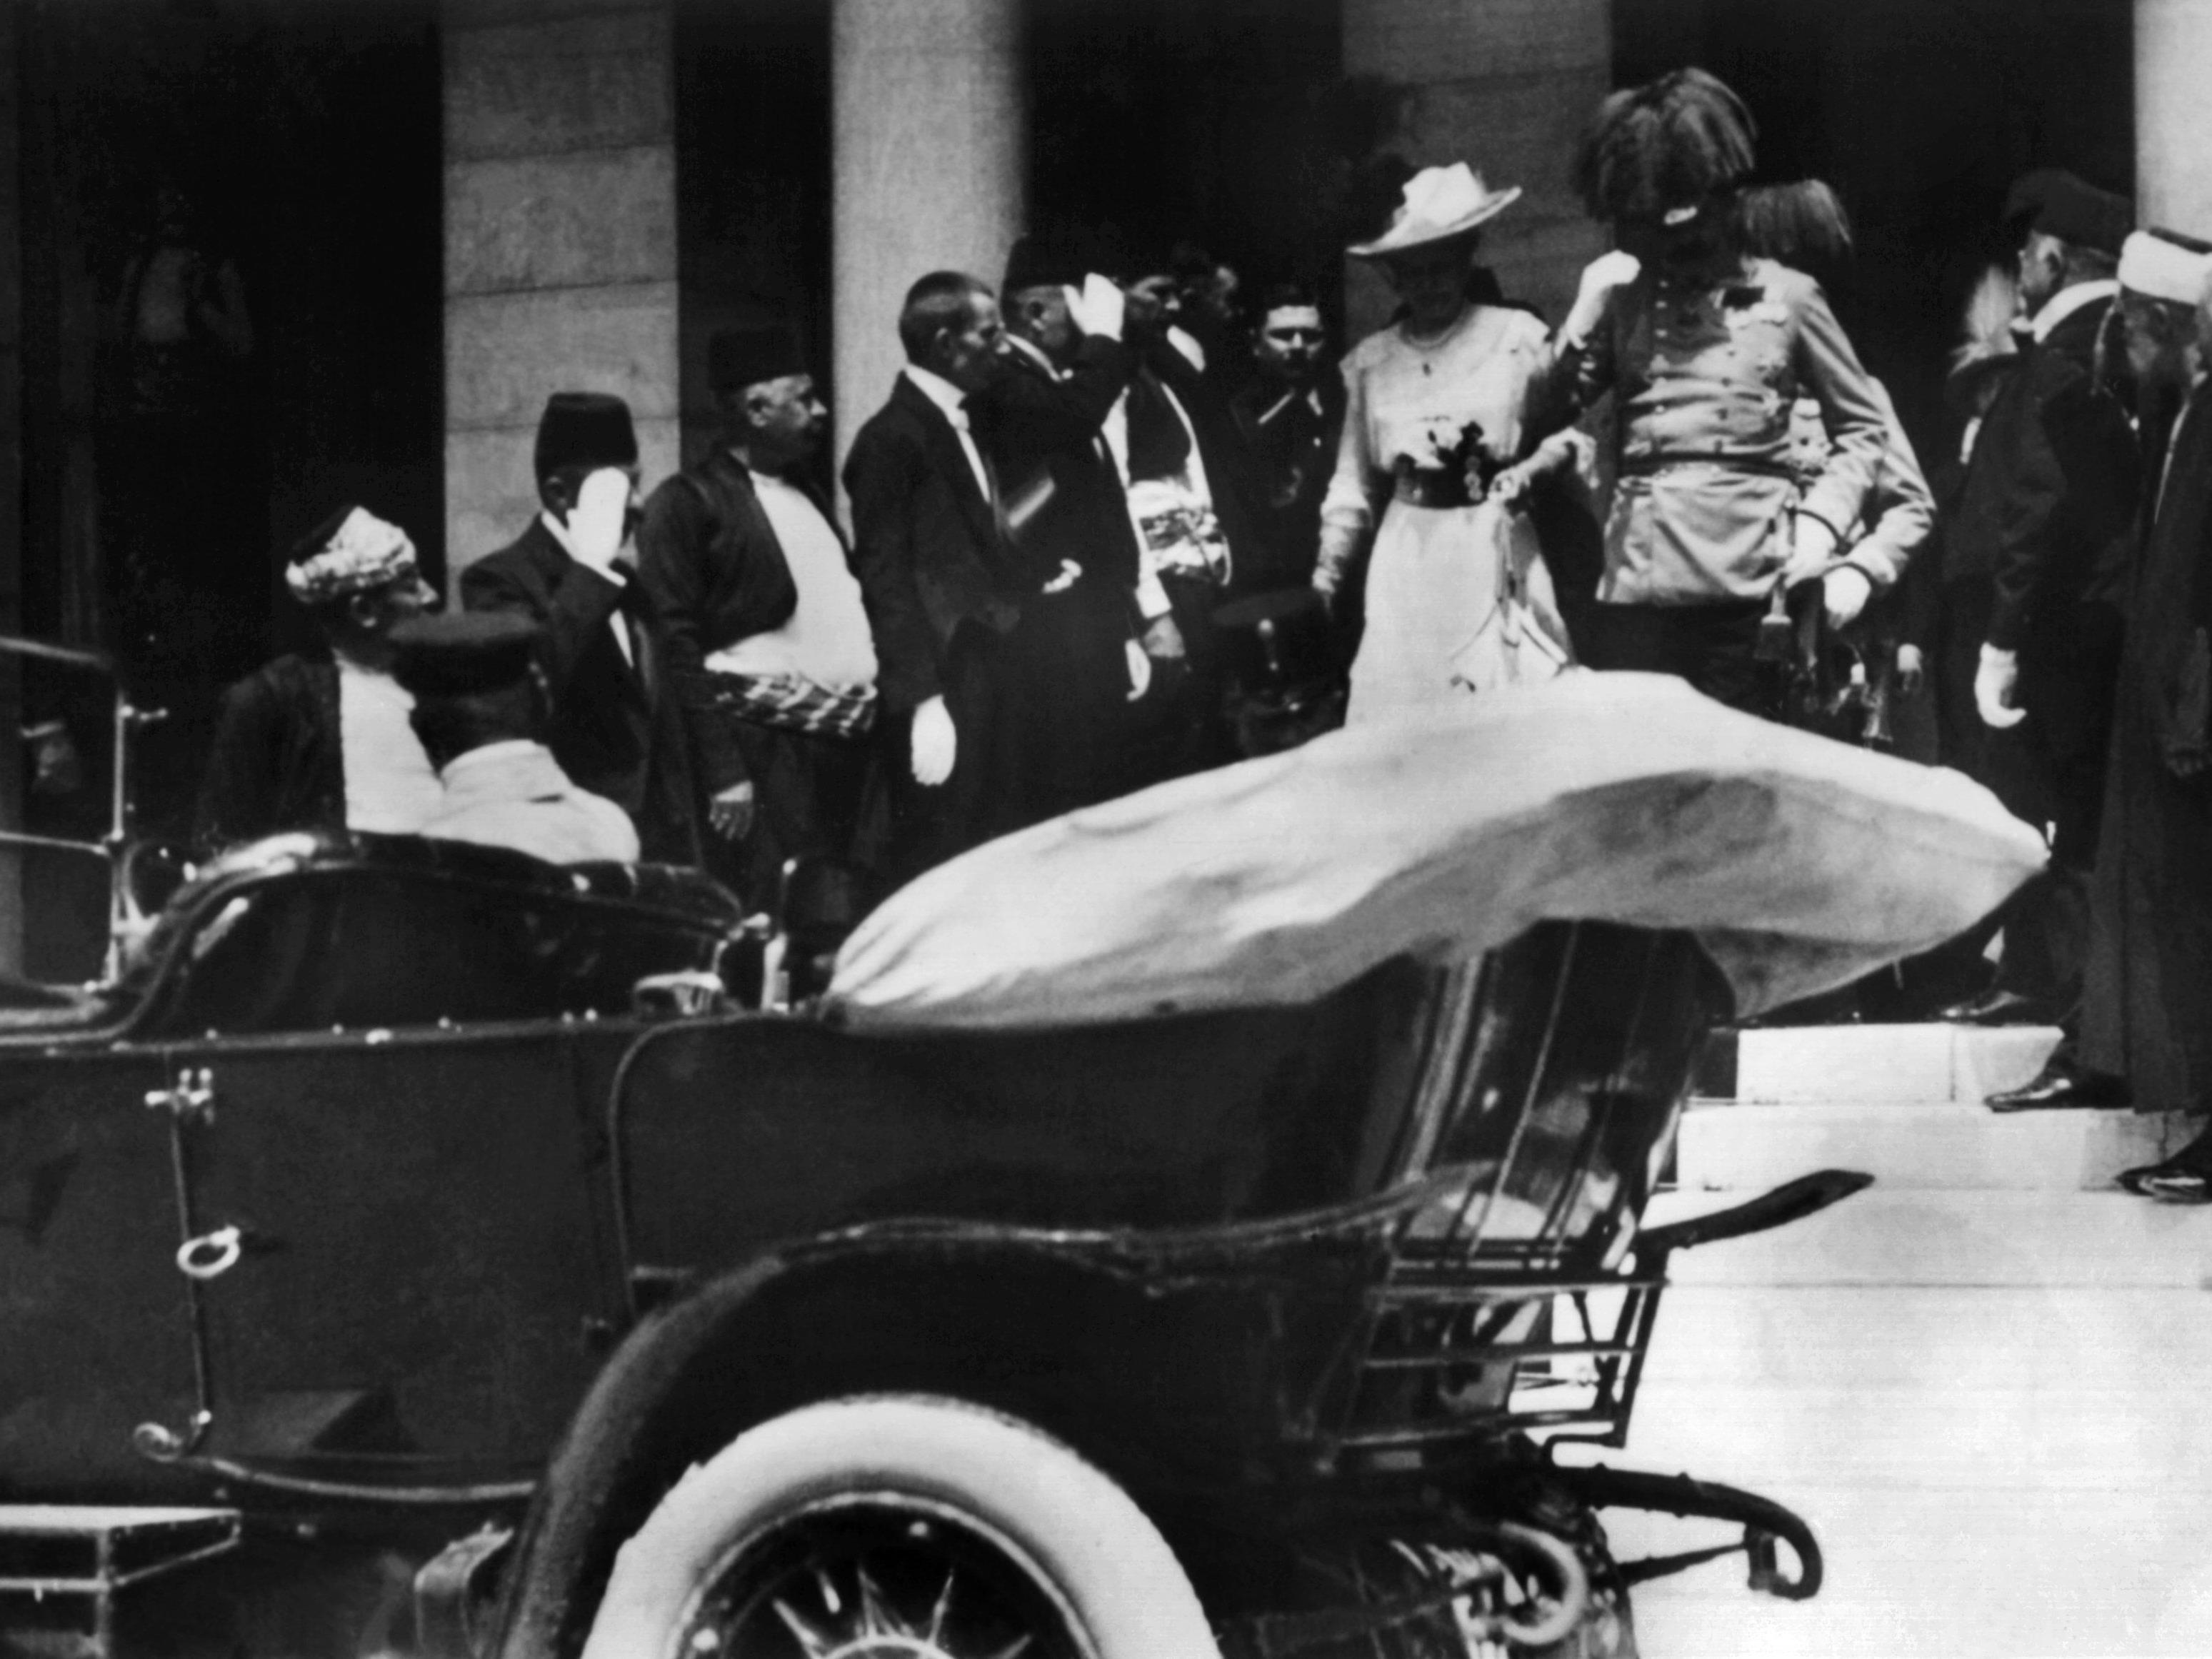 Das österreichische Thronfolgerpaar Erzherzog Franz Ferdinand und seine Gemahlin Sophie am 28.06.1914 in Sarajevo (Bosnien-Herzegowina) wenige Augenblicke vor einem tödlichen Attentat.